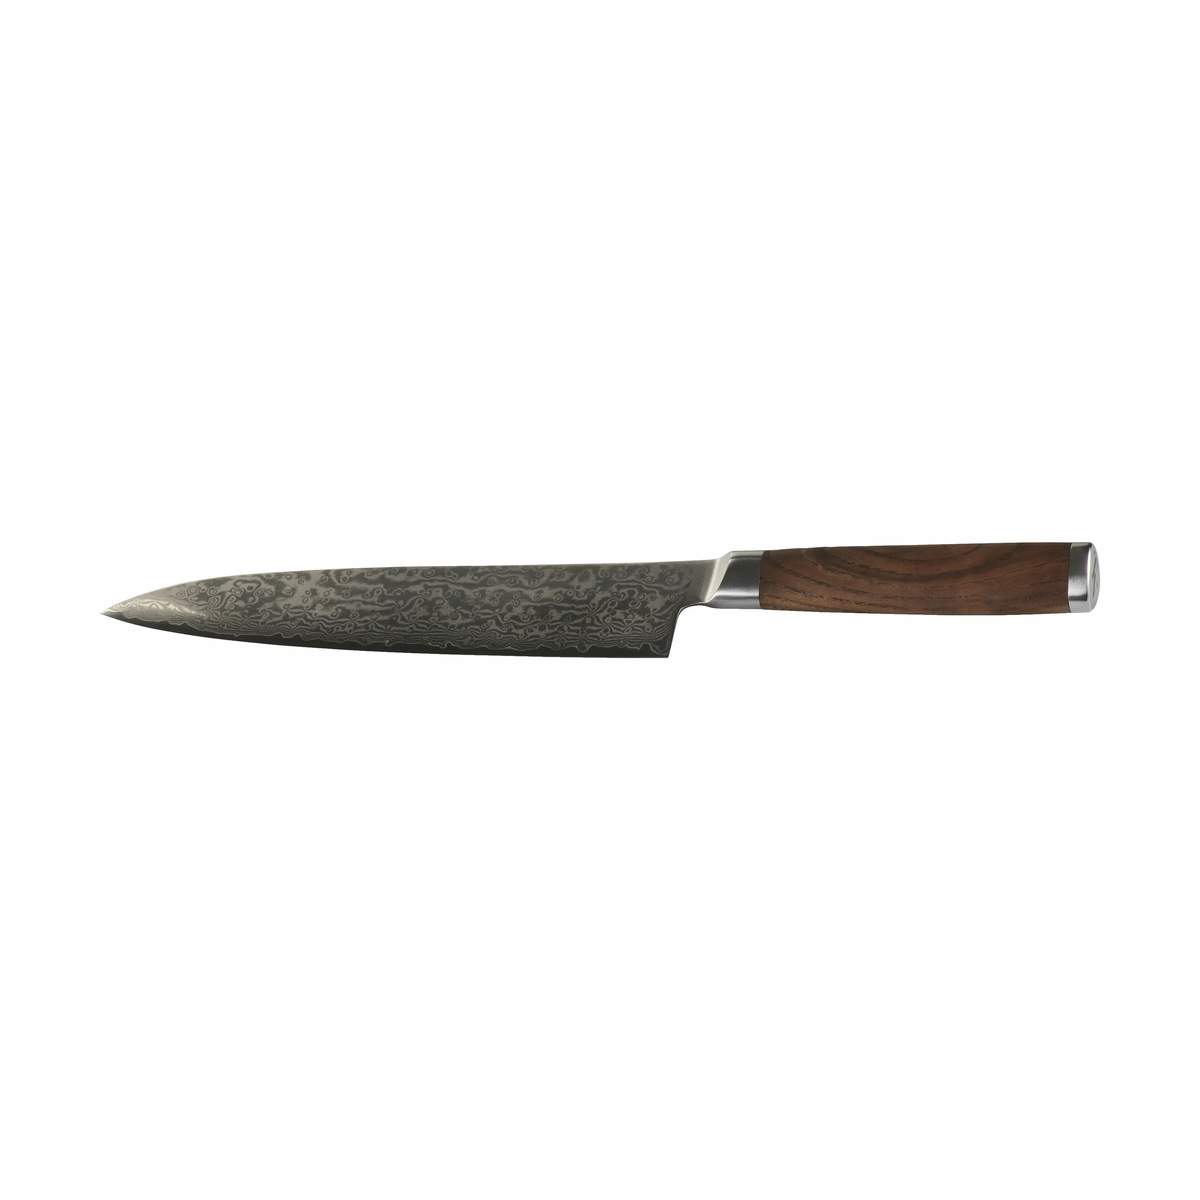 Timm Vladimir Kitchen - Kokkekniv L 21 cm - Karboniseret ask/damaskusstål - | Imerco